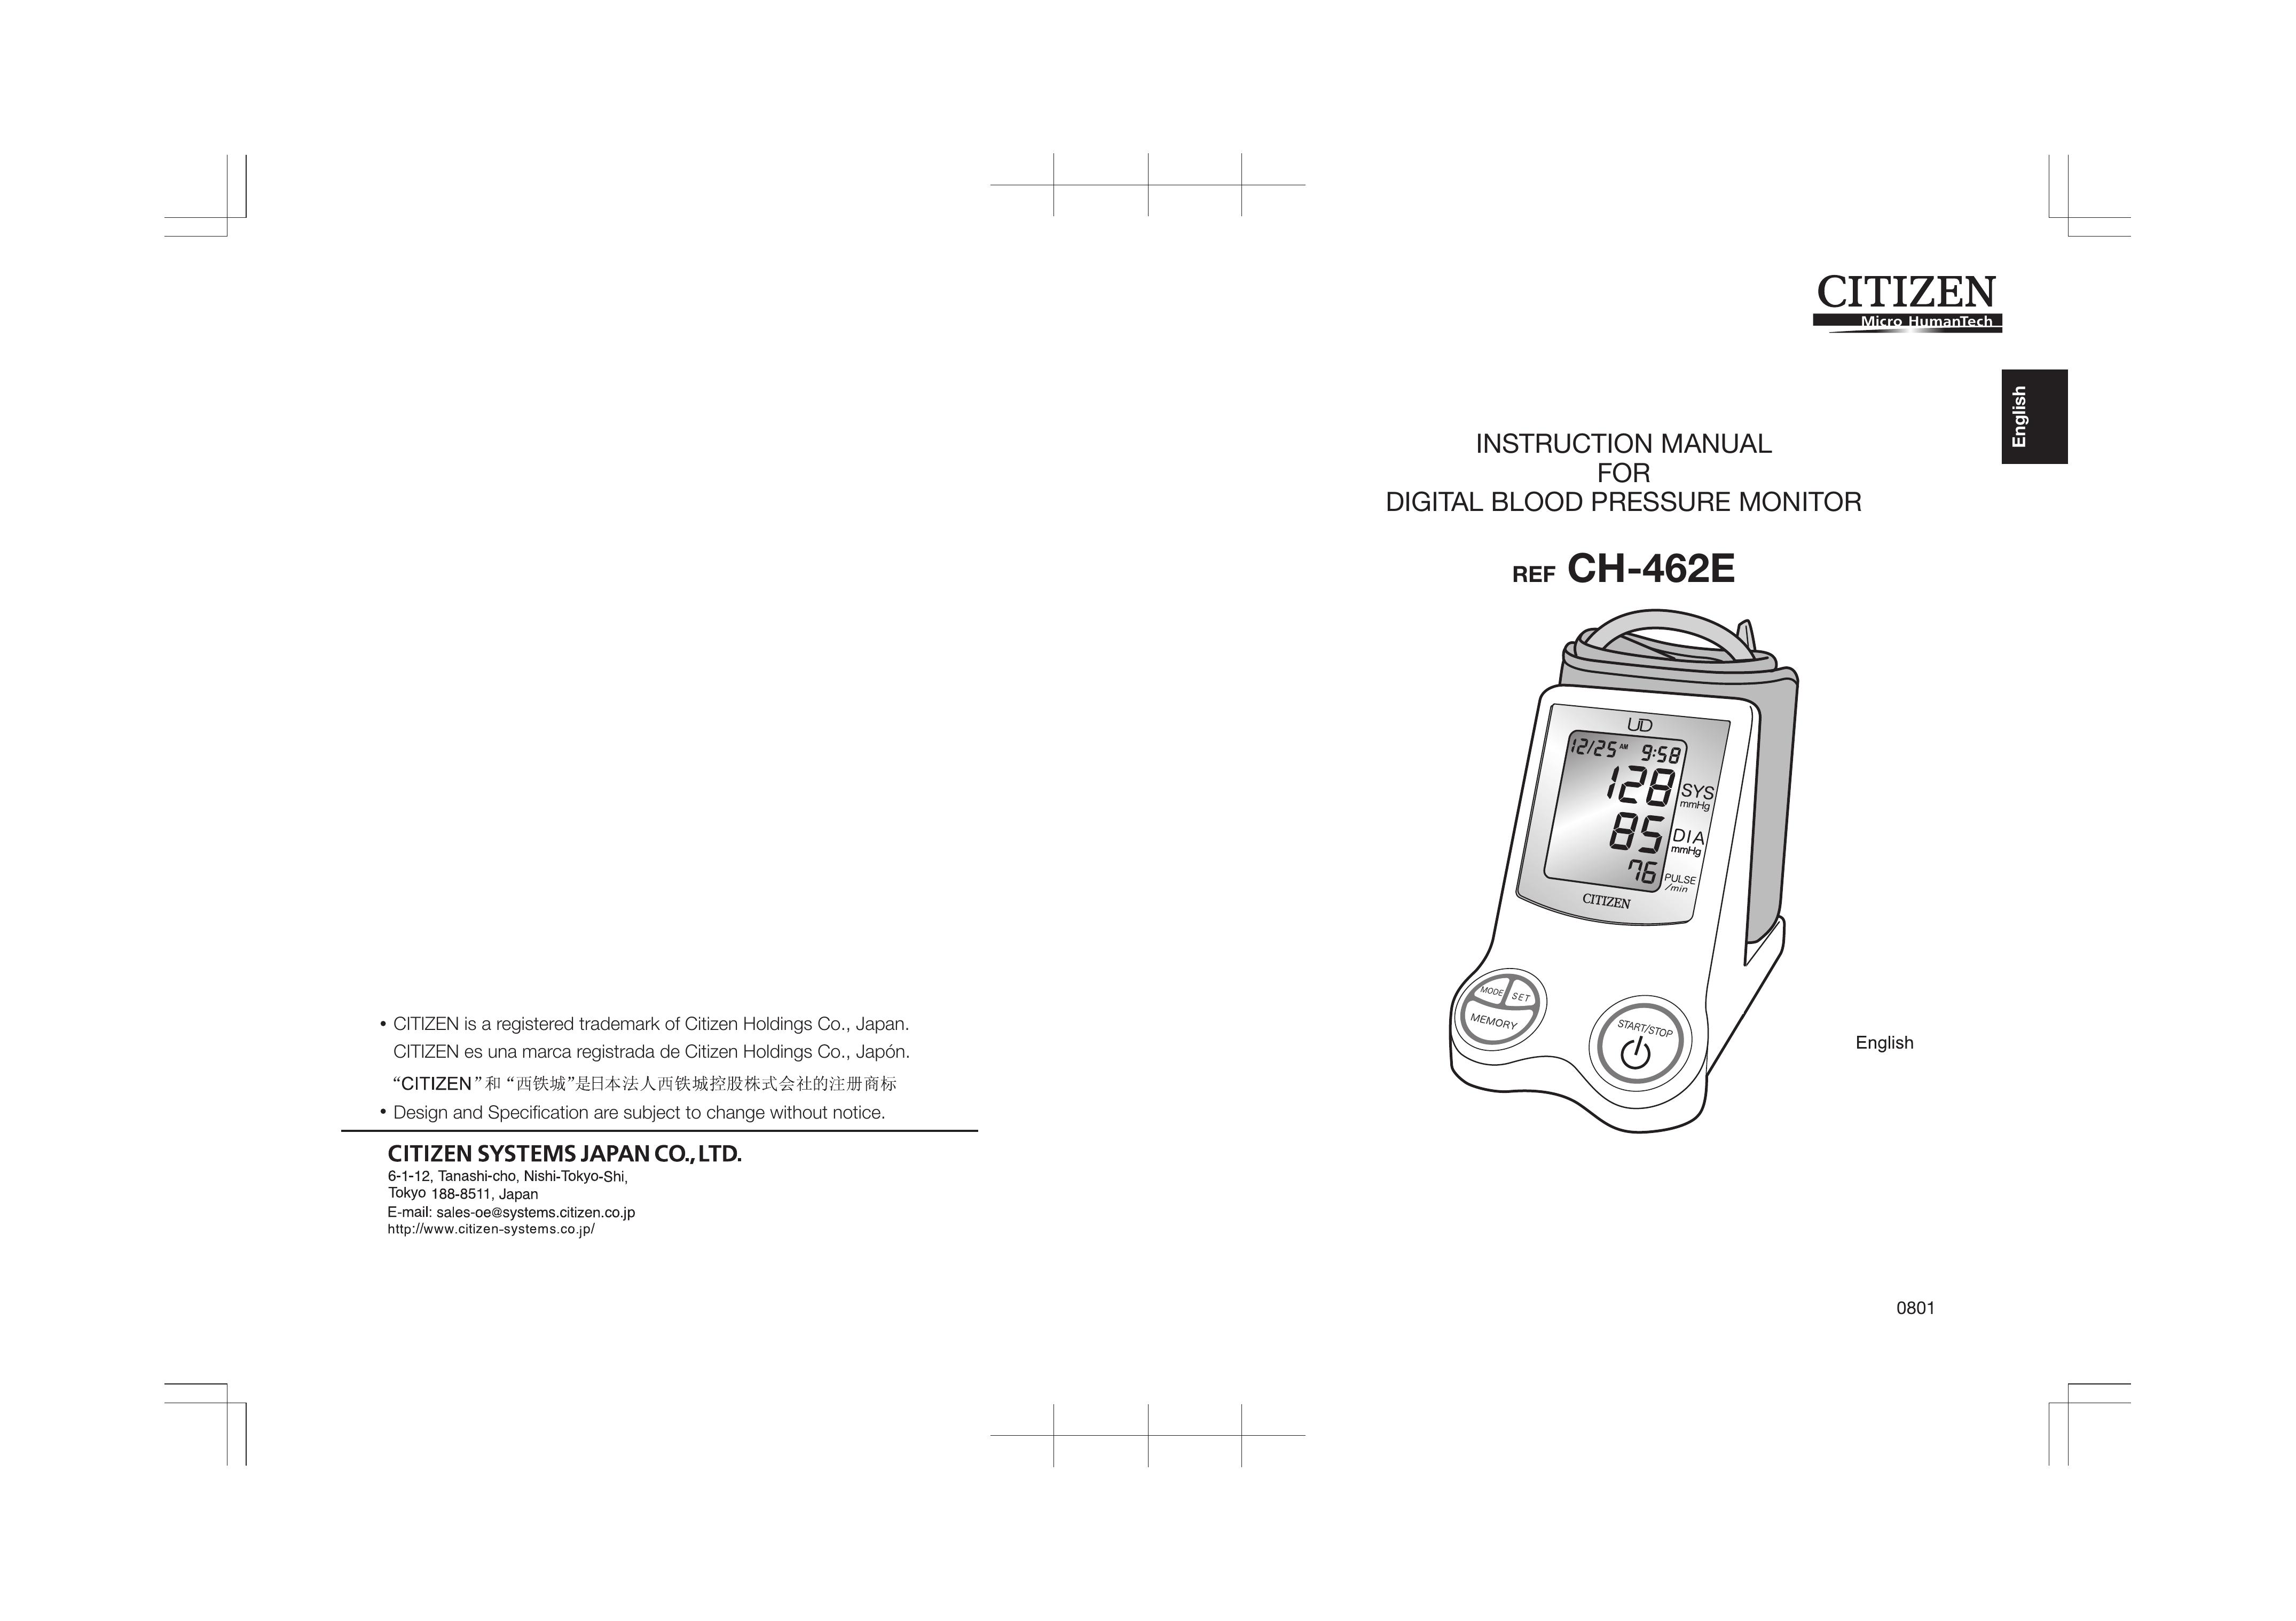 Citizen CH-462E Blood Pressure Monitor User Manual